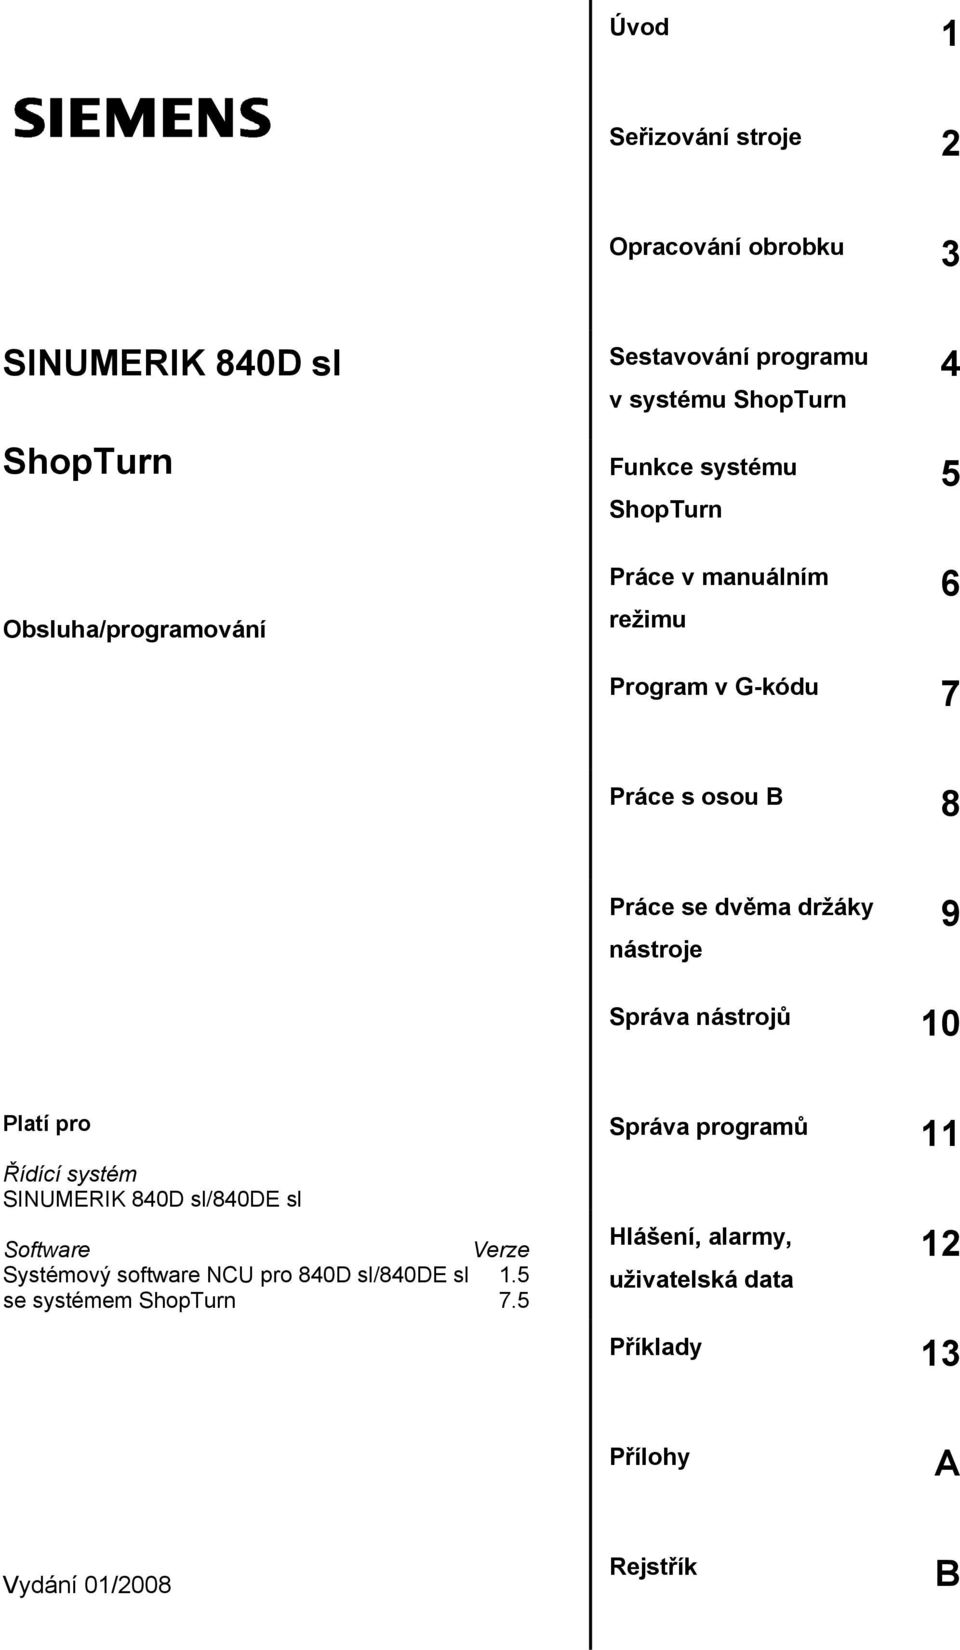 9 Správa nástrojů 10 Platí pro Řídící systém SINUMERIK 840D sl/840de sl Software Verze Systémový software NCU pro 840D sl/840de sl